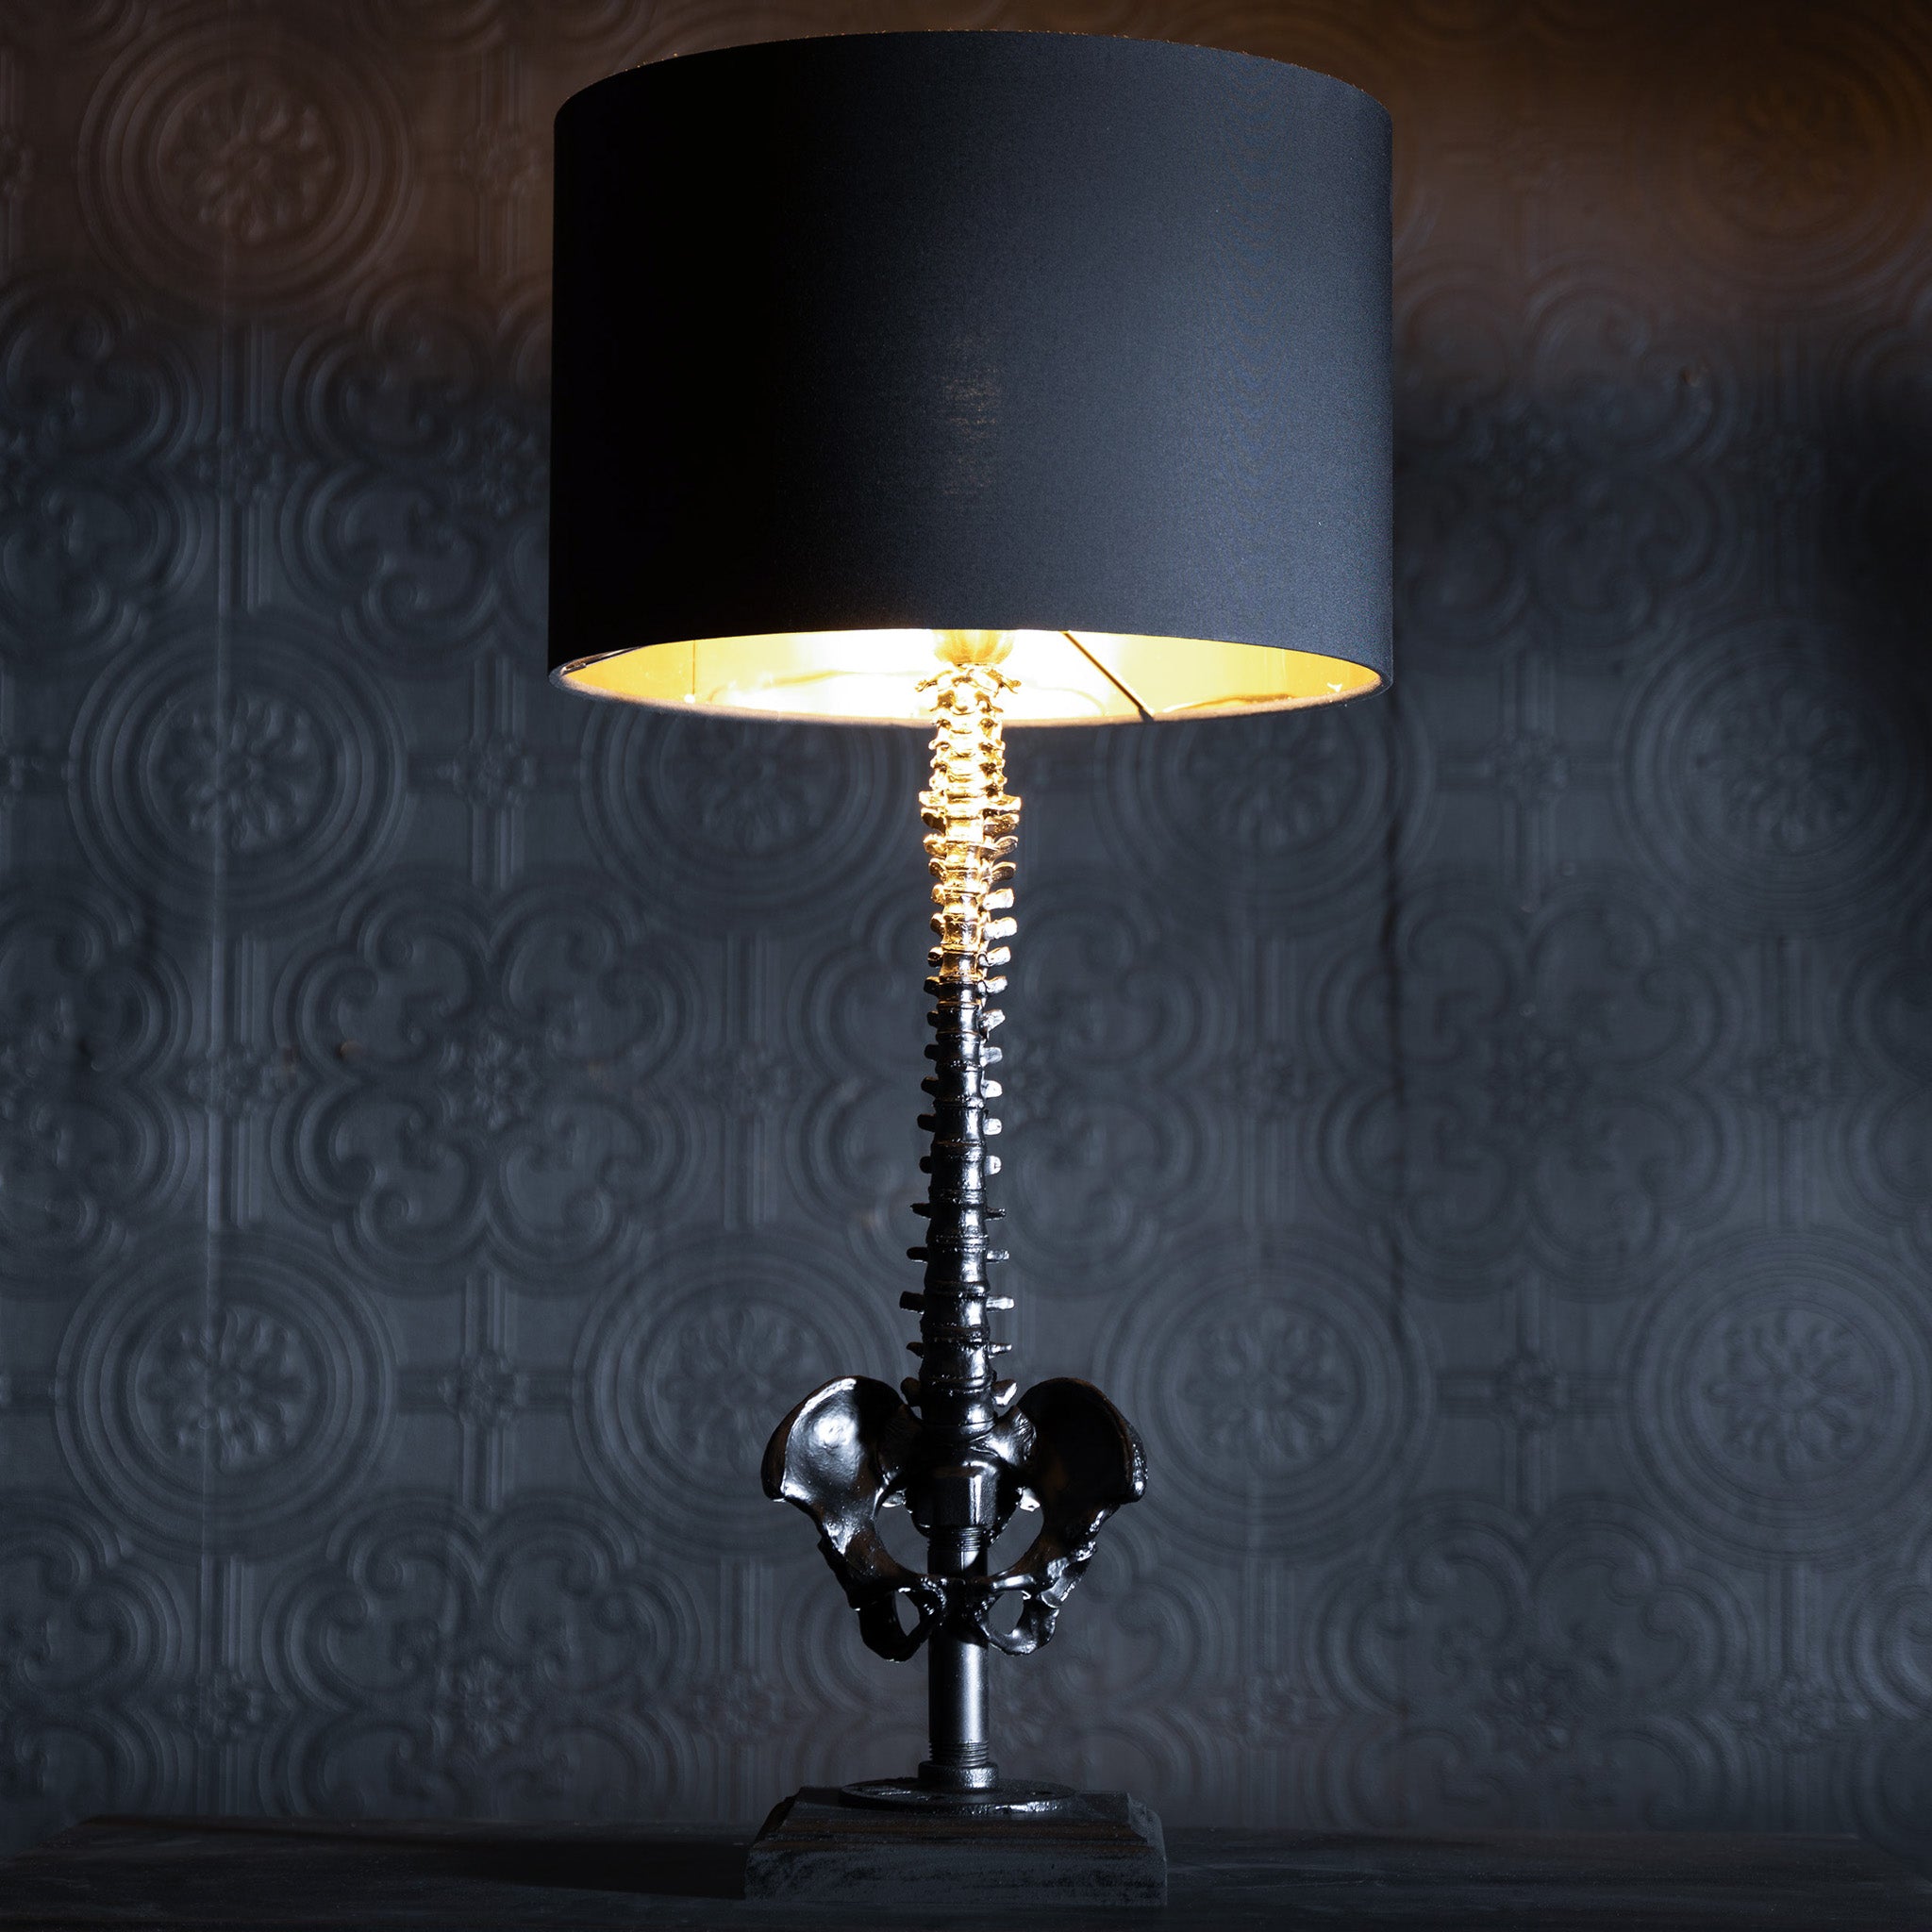 Spine Lamp Table Lamp Gothic Lighting Black 